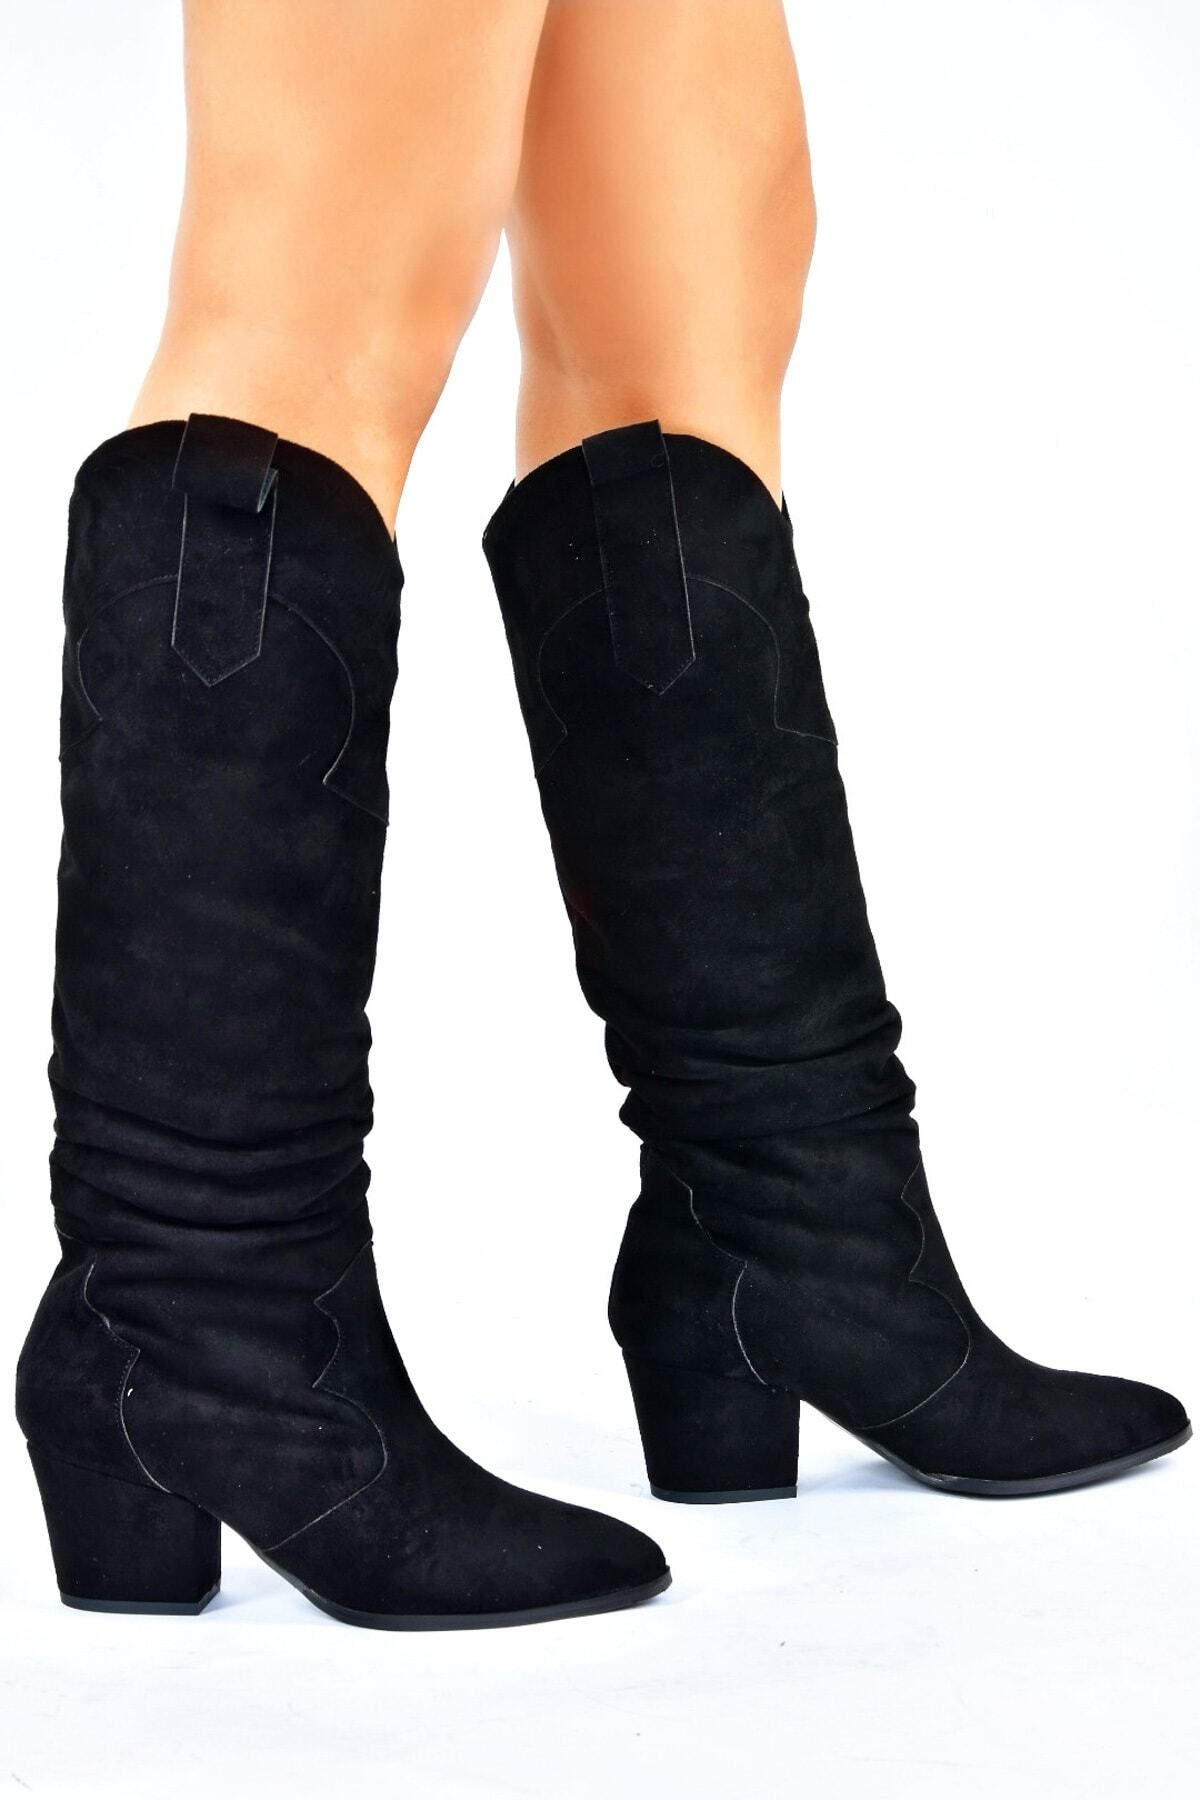 Fox Shoes Siyah Süet Alçak Topuklu Kadın Çizme L296006802